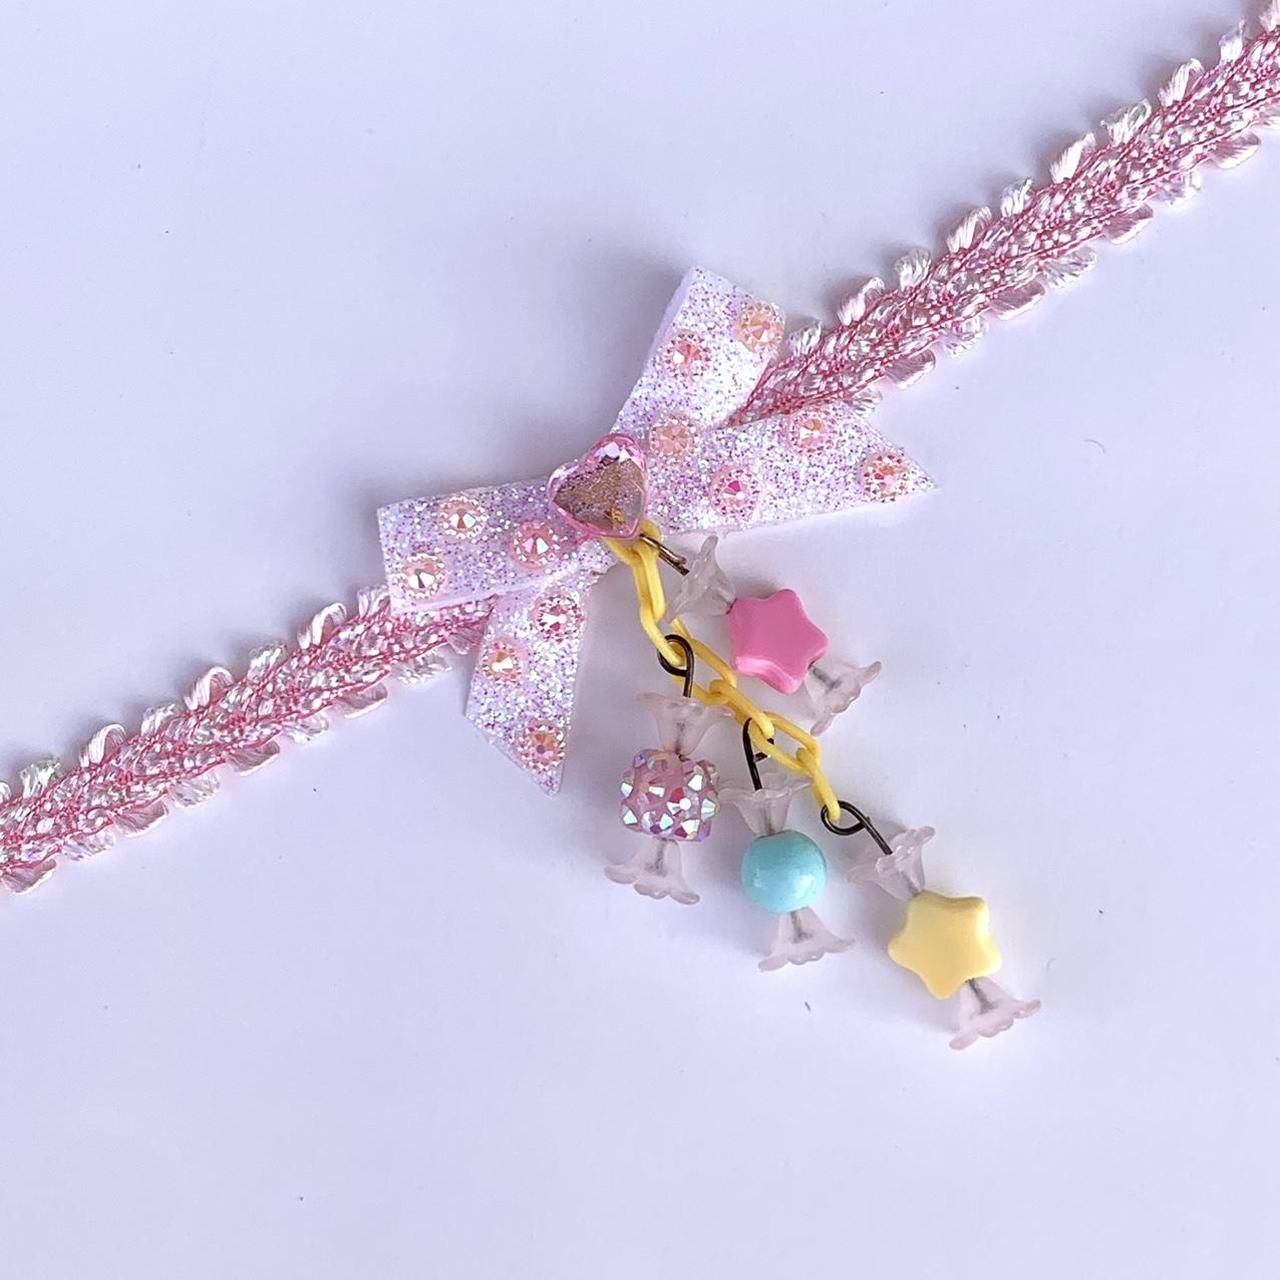 Sugarpill Women's White and Pink Jewellery (3)